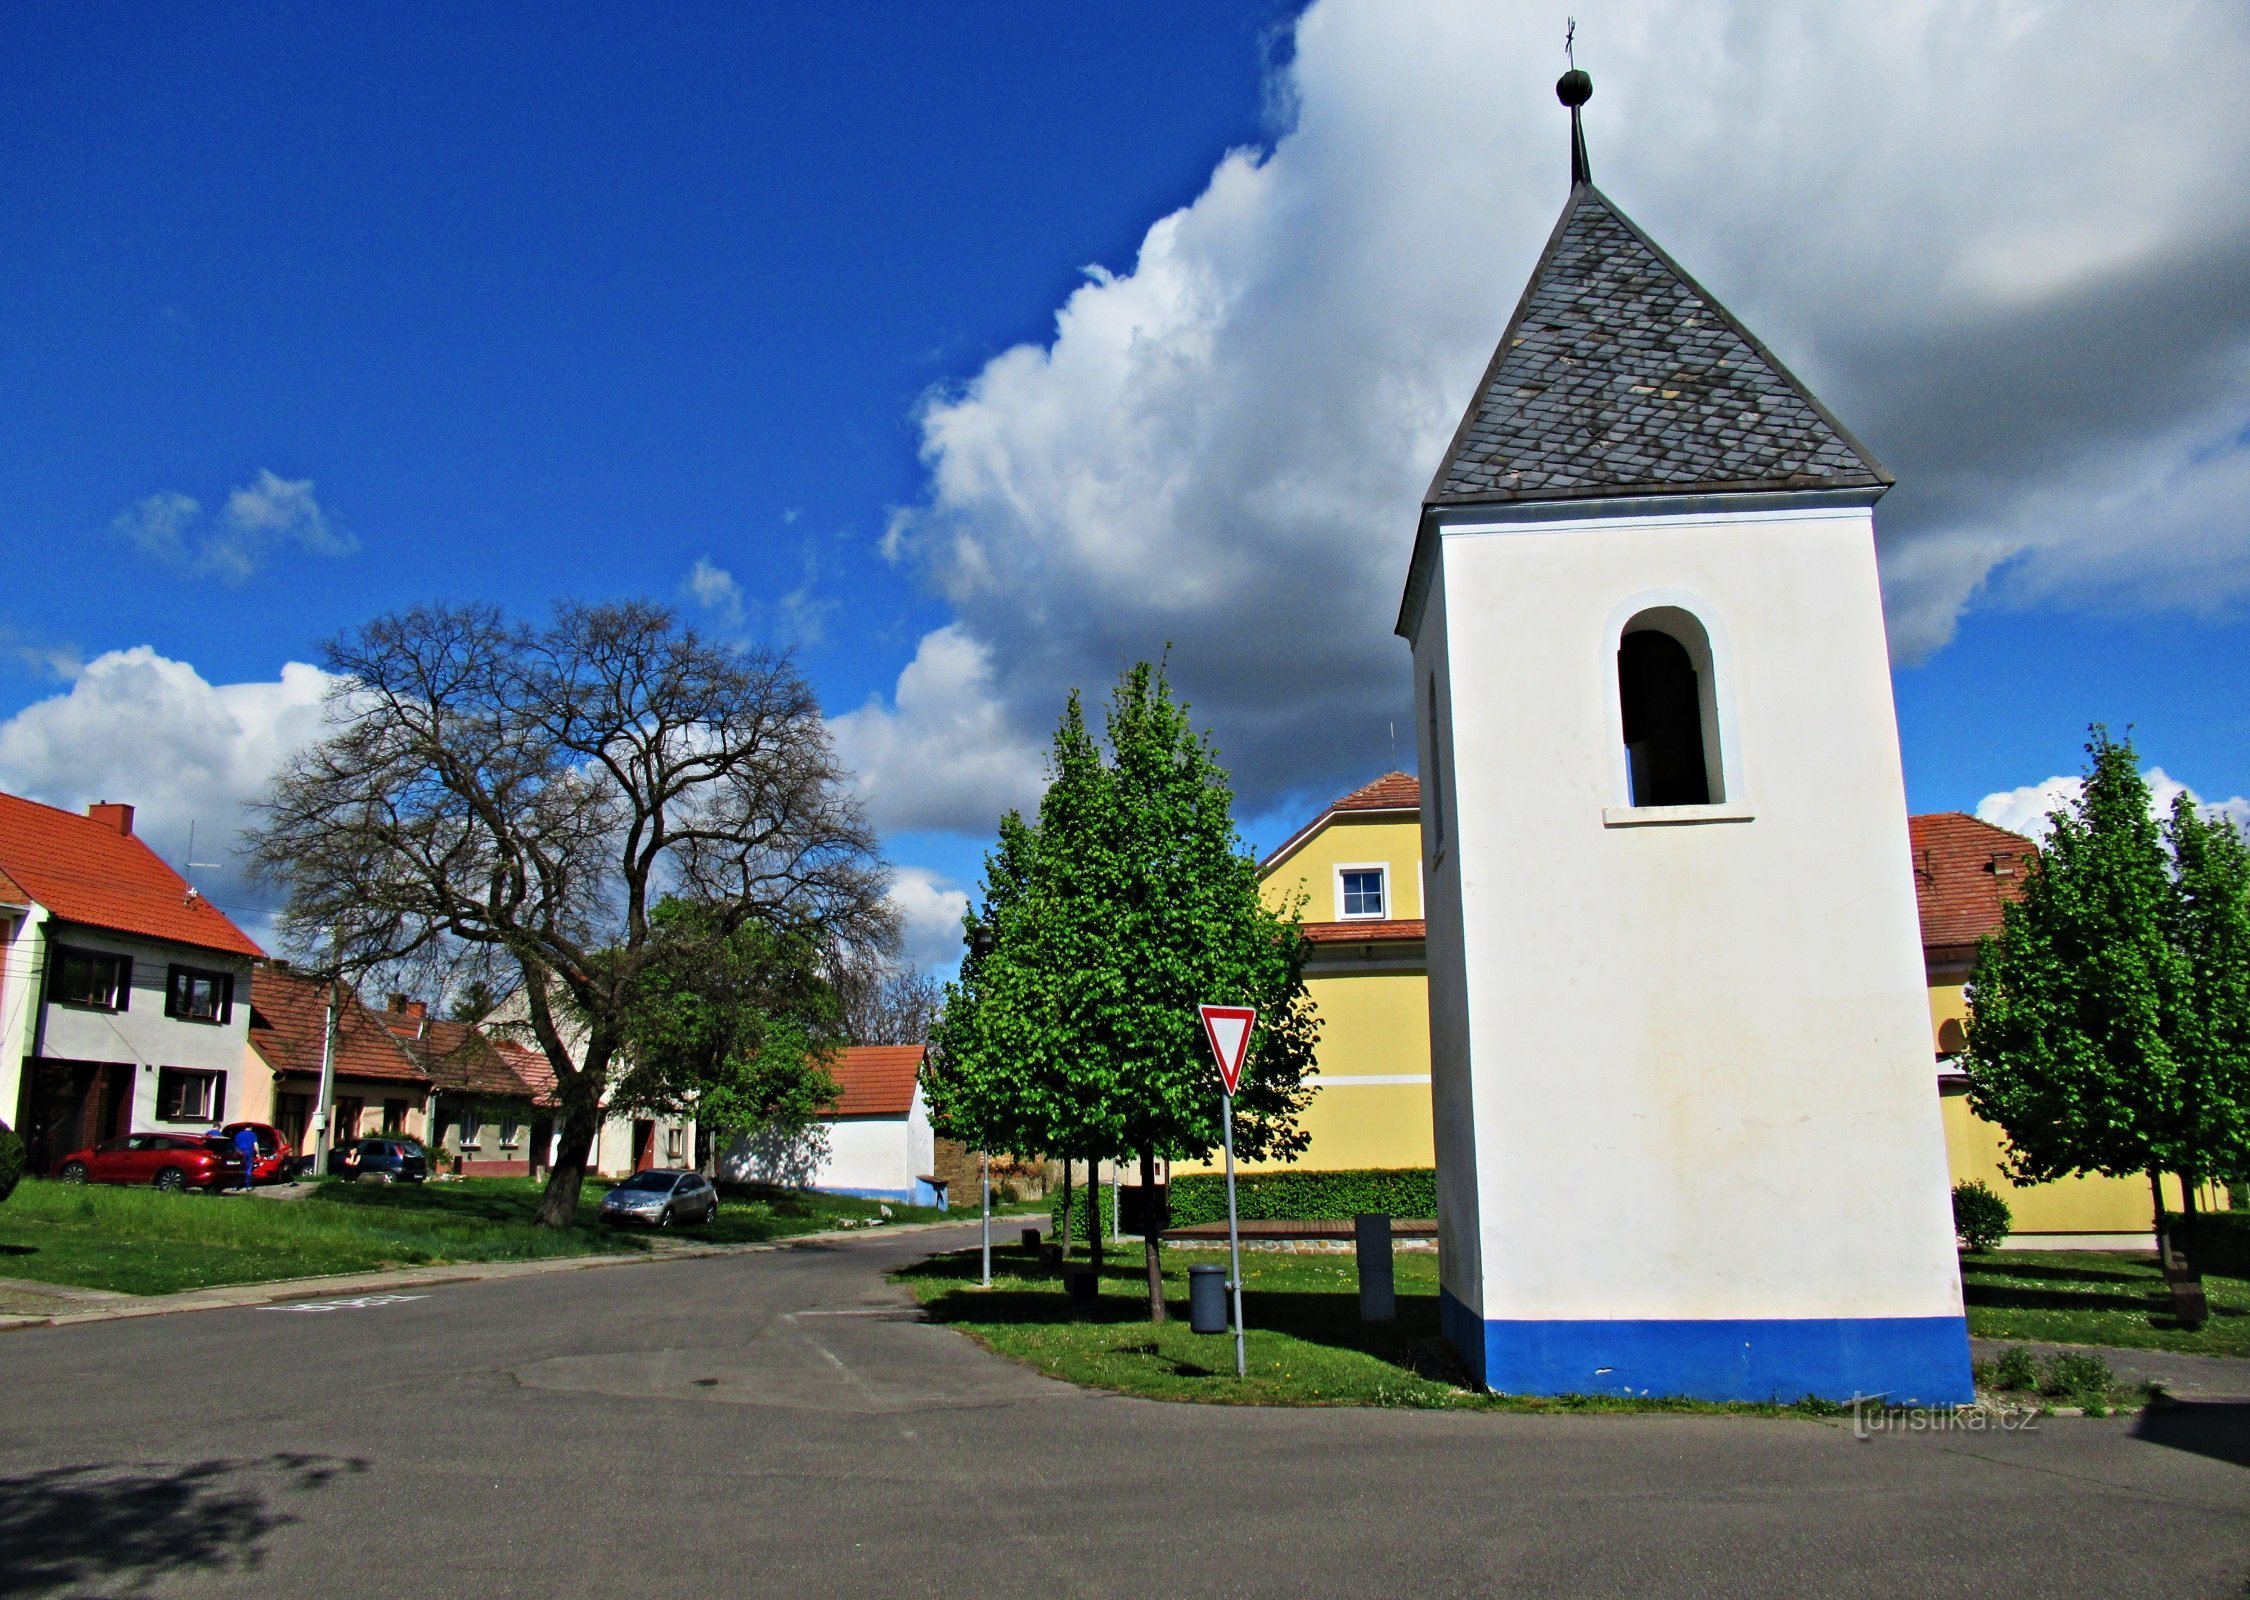 o centro da vila com a torre sineira